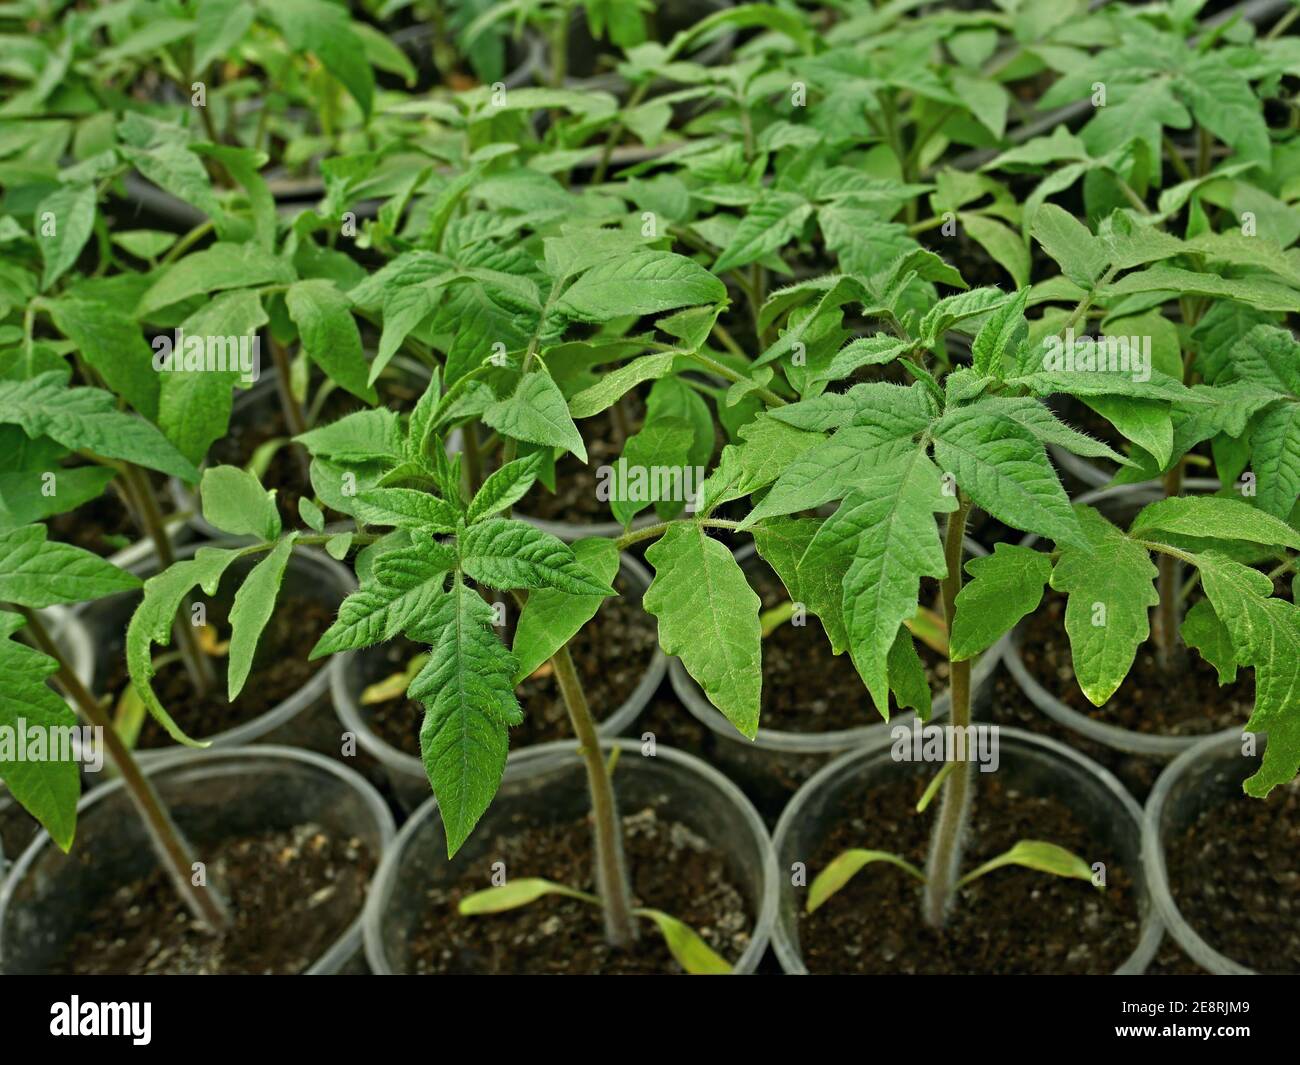 Beaucoup de jeunes plants de tomates vertes poussant dans le sol dans des tasses en plastique, les plantes avant de planter dans le sol au printemps Banque D'Images